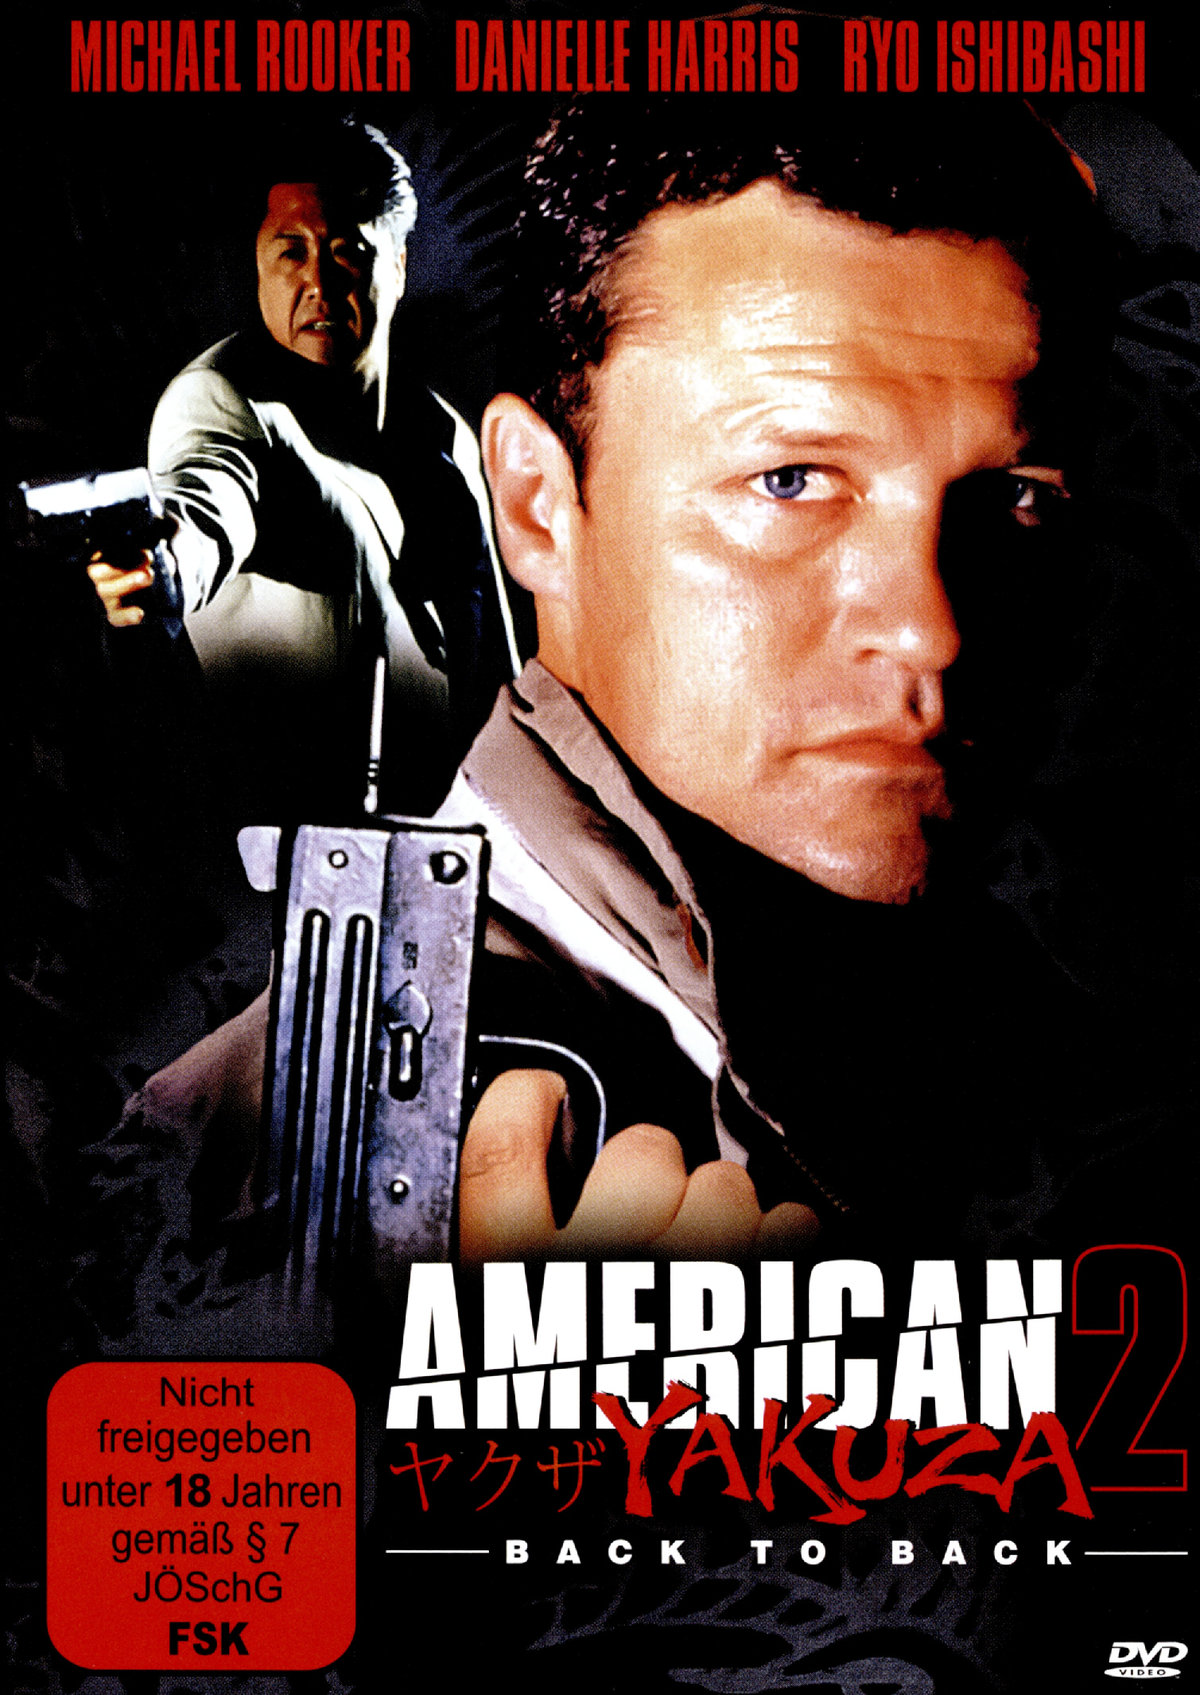 American Yakuza 2 - Back to Back